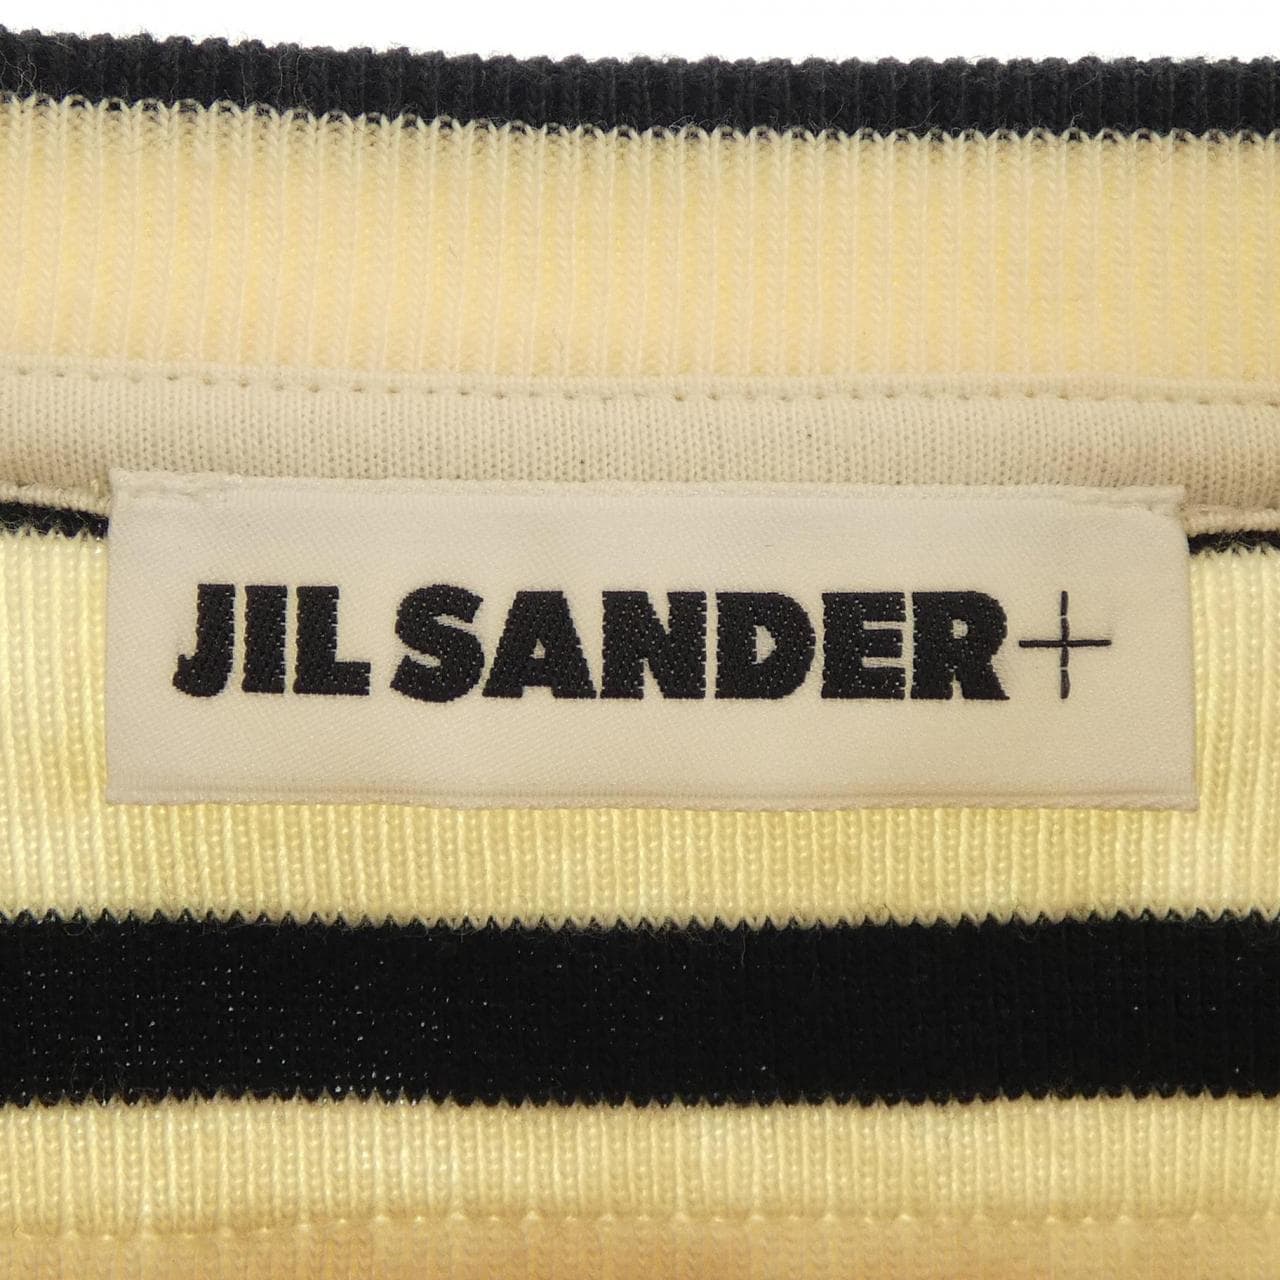 ジルサンダープラス JIL SANDER+ トップス